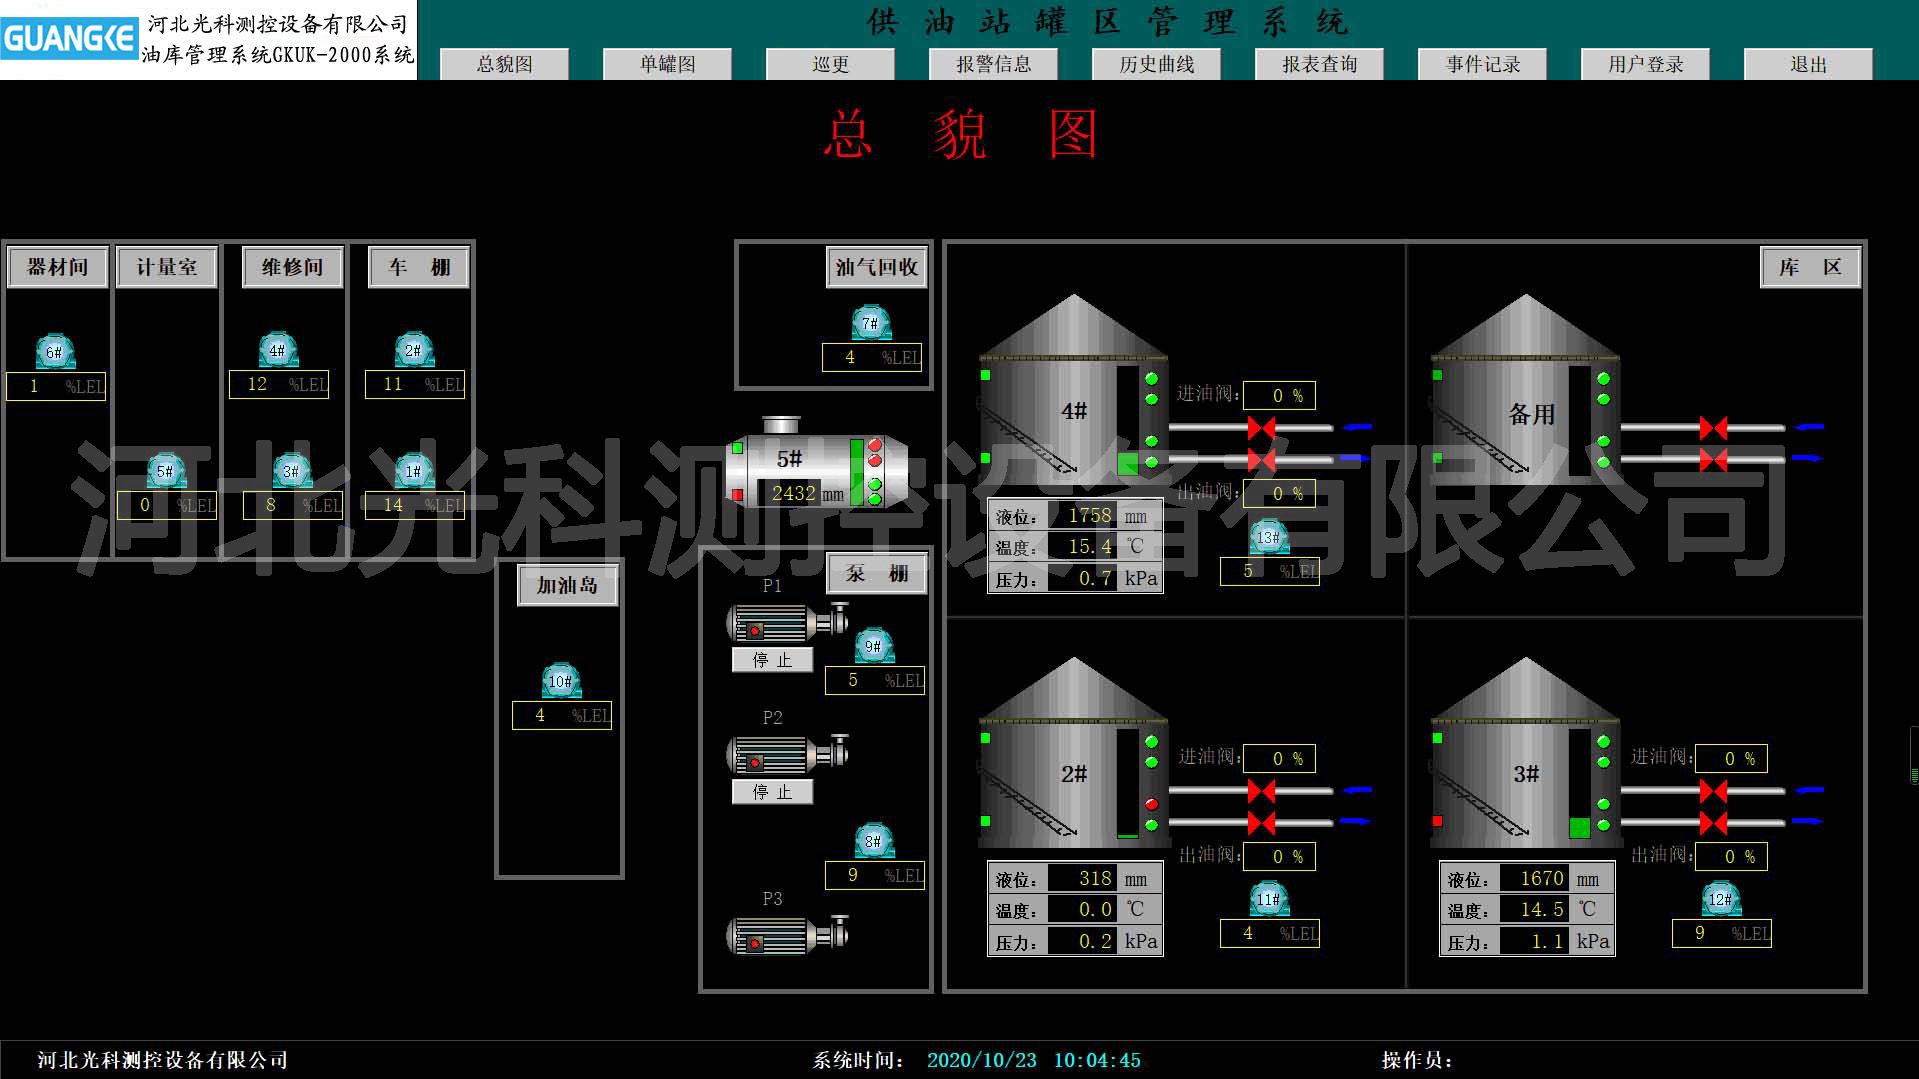 油库管理系统GKUK-2000系统